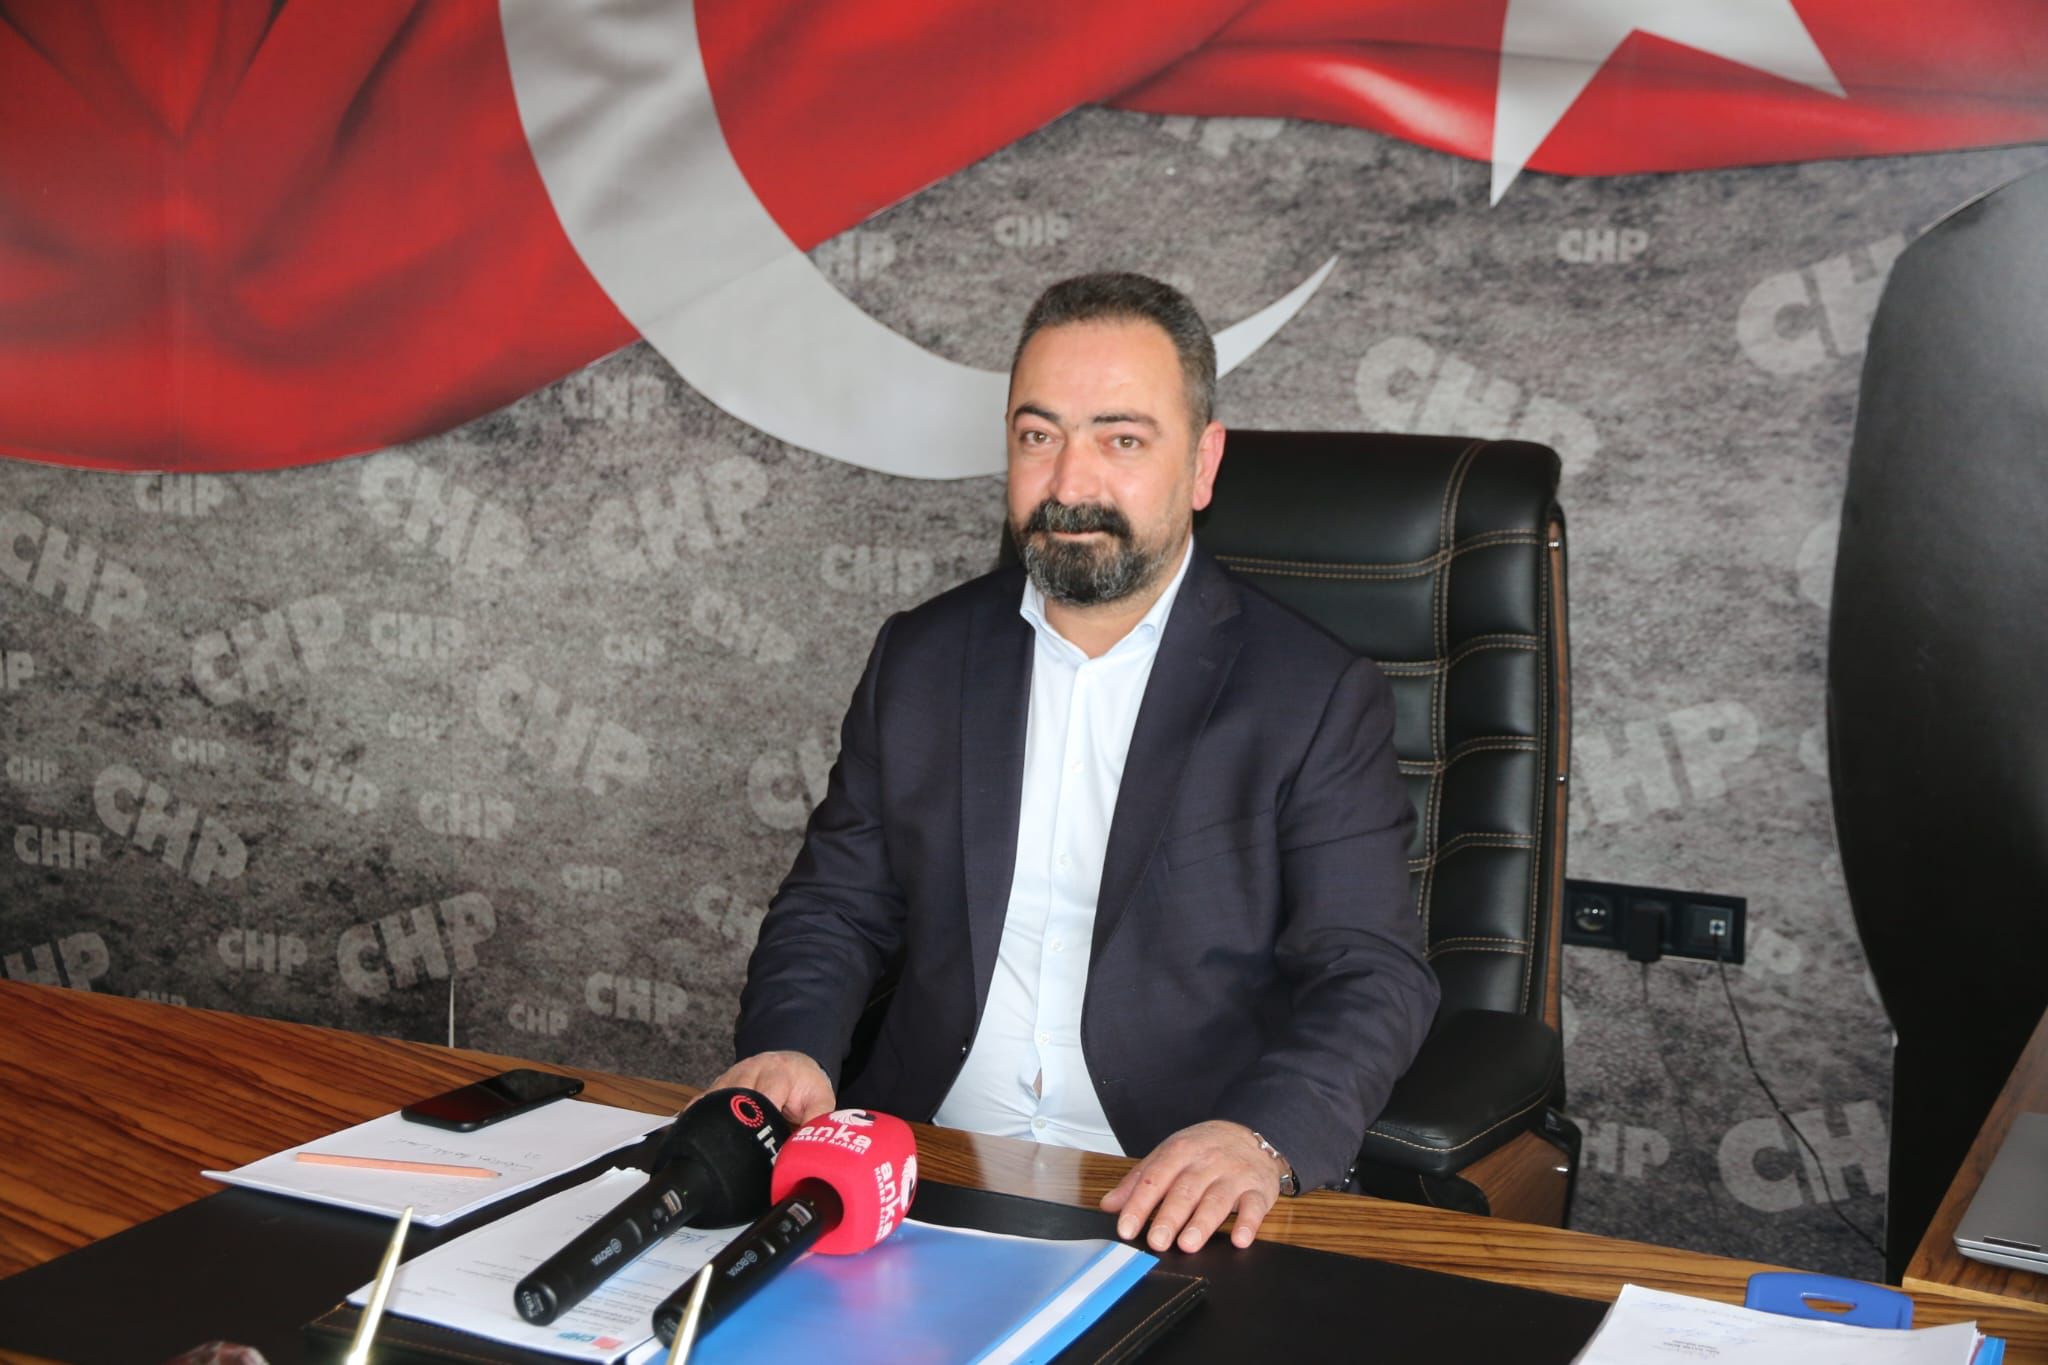 CHP Milletvekili Gürsel Erol’un oyunu nerede kullanacağı belli oldu